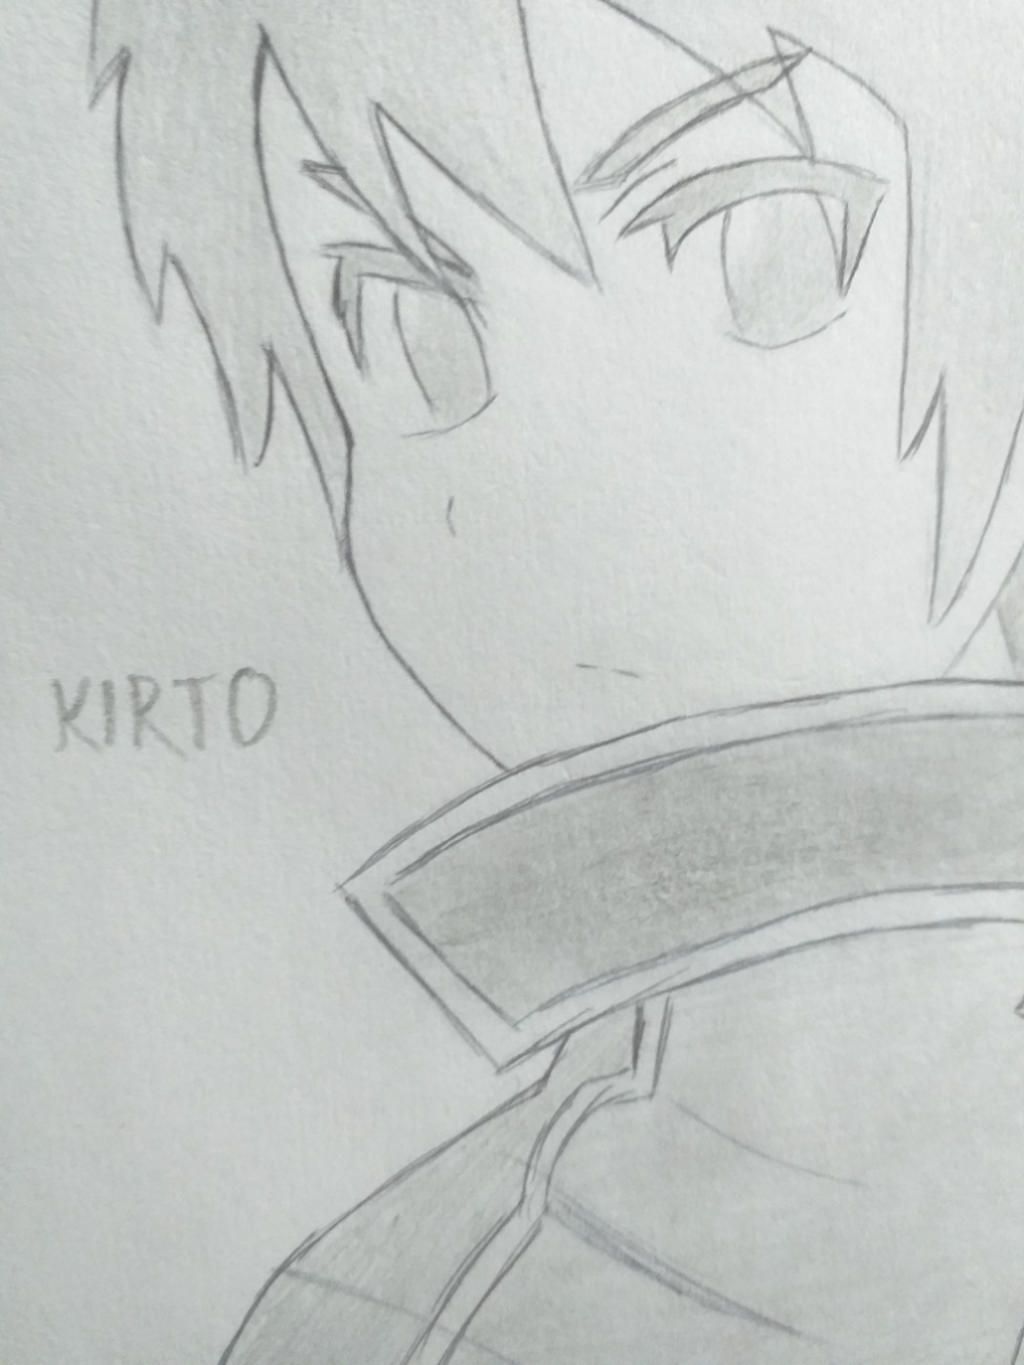 How to draw Kirito || Sword Art Online || Hướng dẫn vẽ Kirito || - YouTube